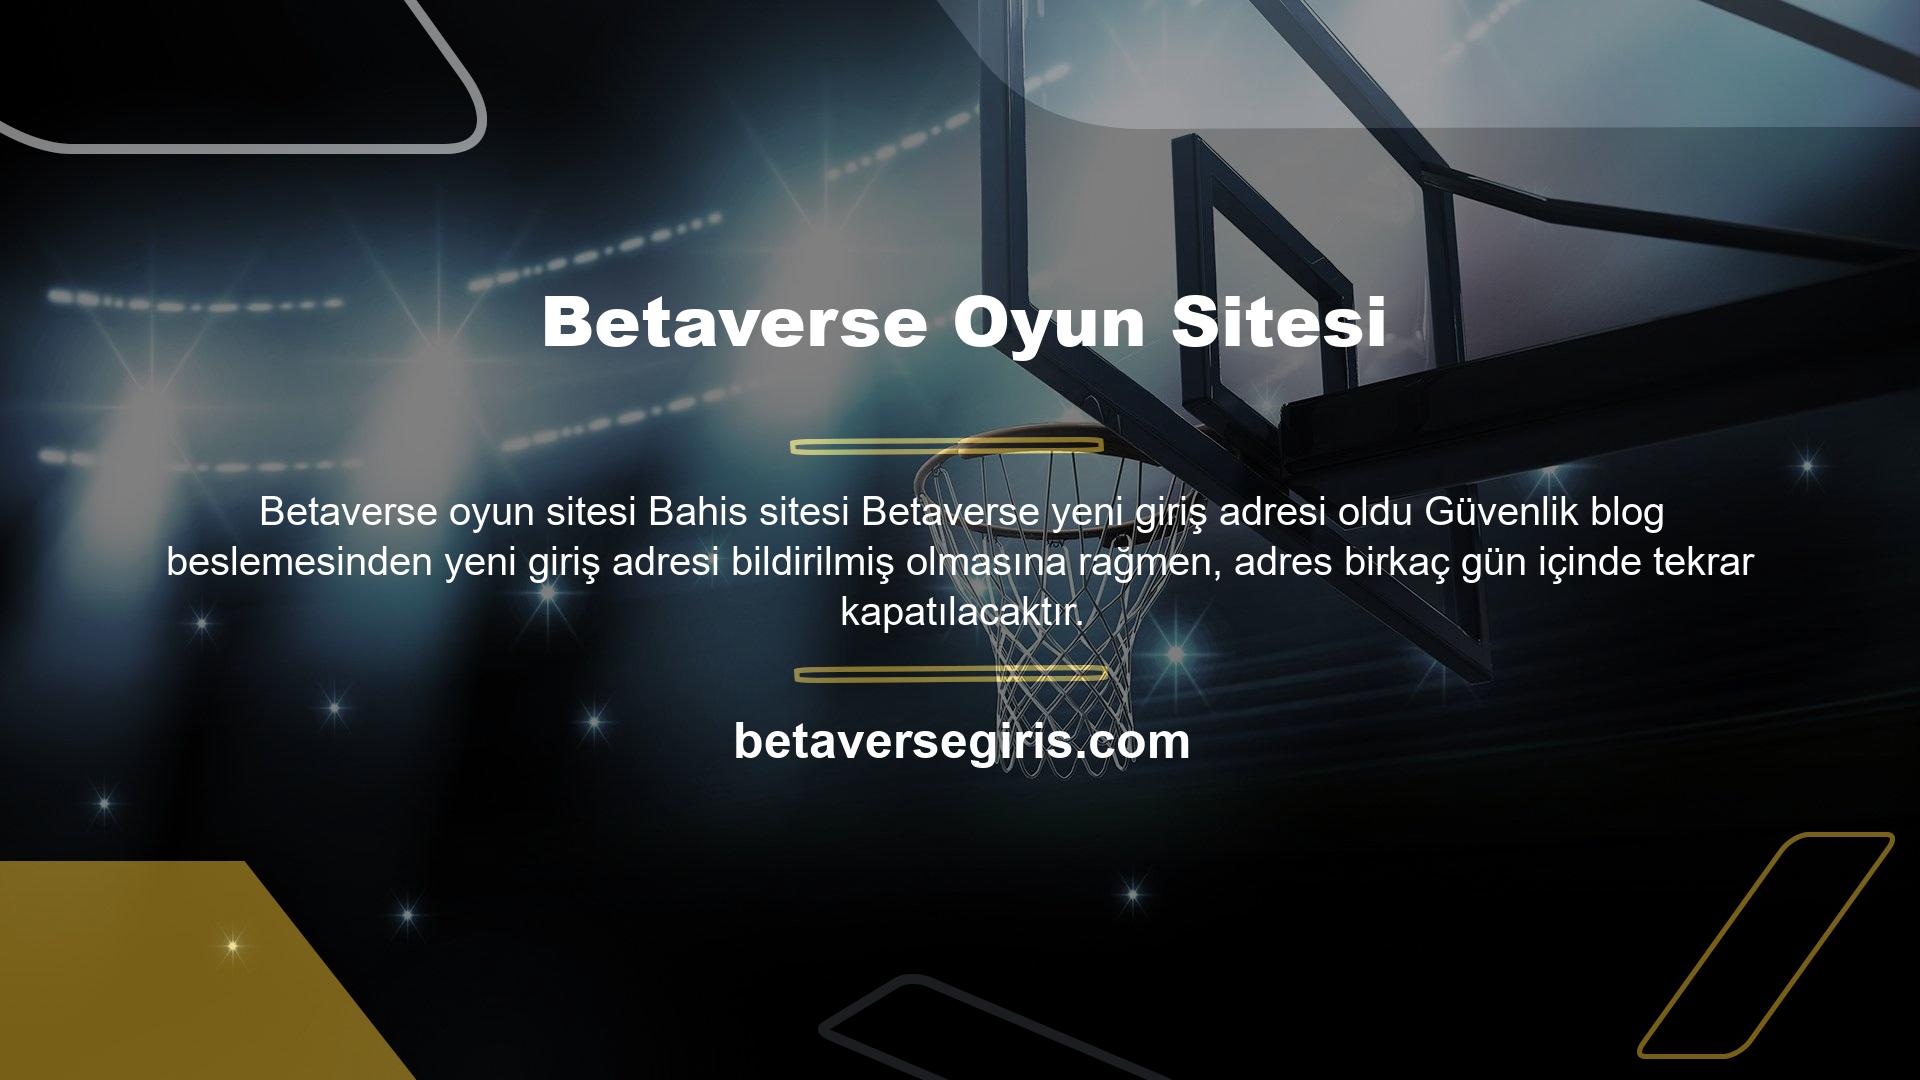 Betaverse oyun sitesi